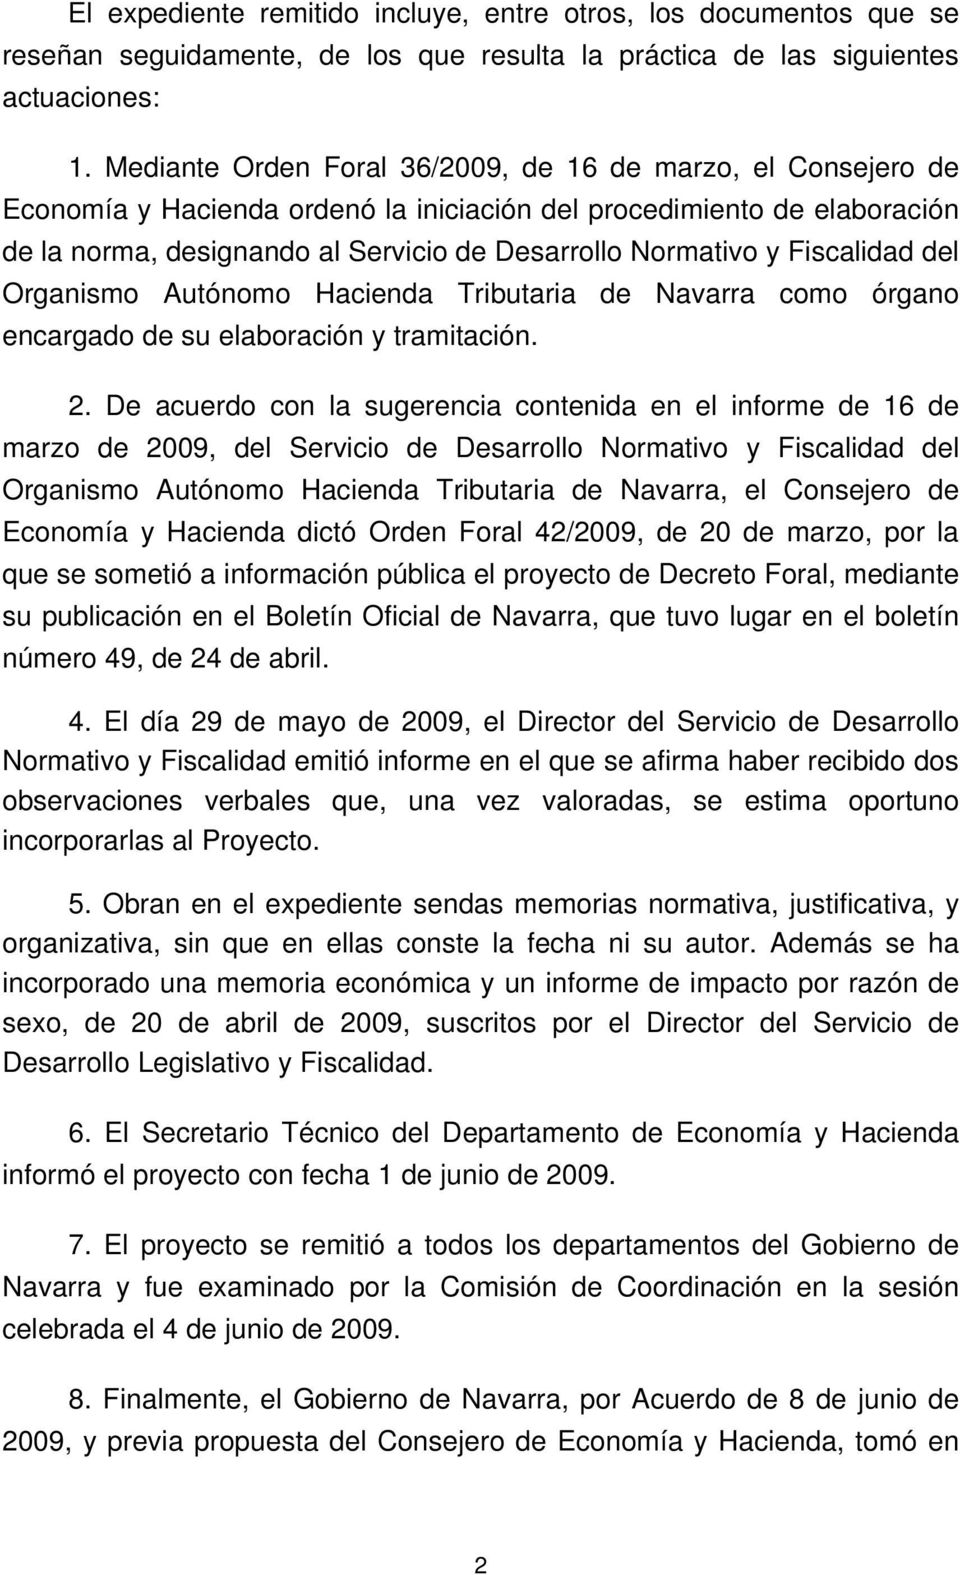 Fiscalidad del Organismo Autónomo Hacienda Tributaria de Navarra como órgano encargado de su elaboración y tramitación. 2.